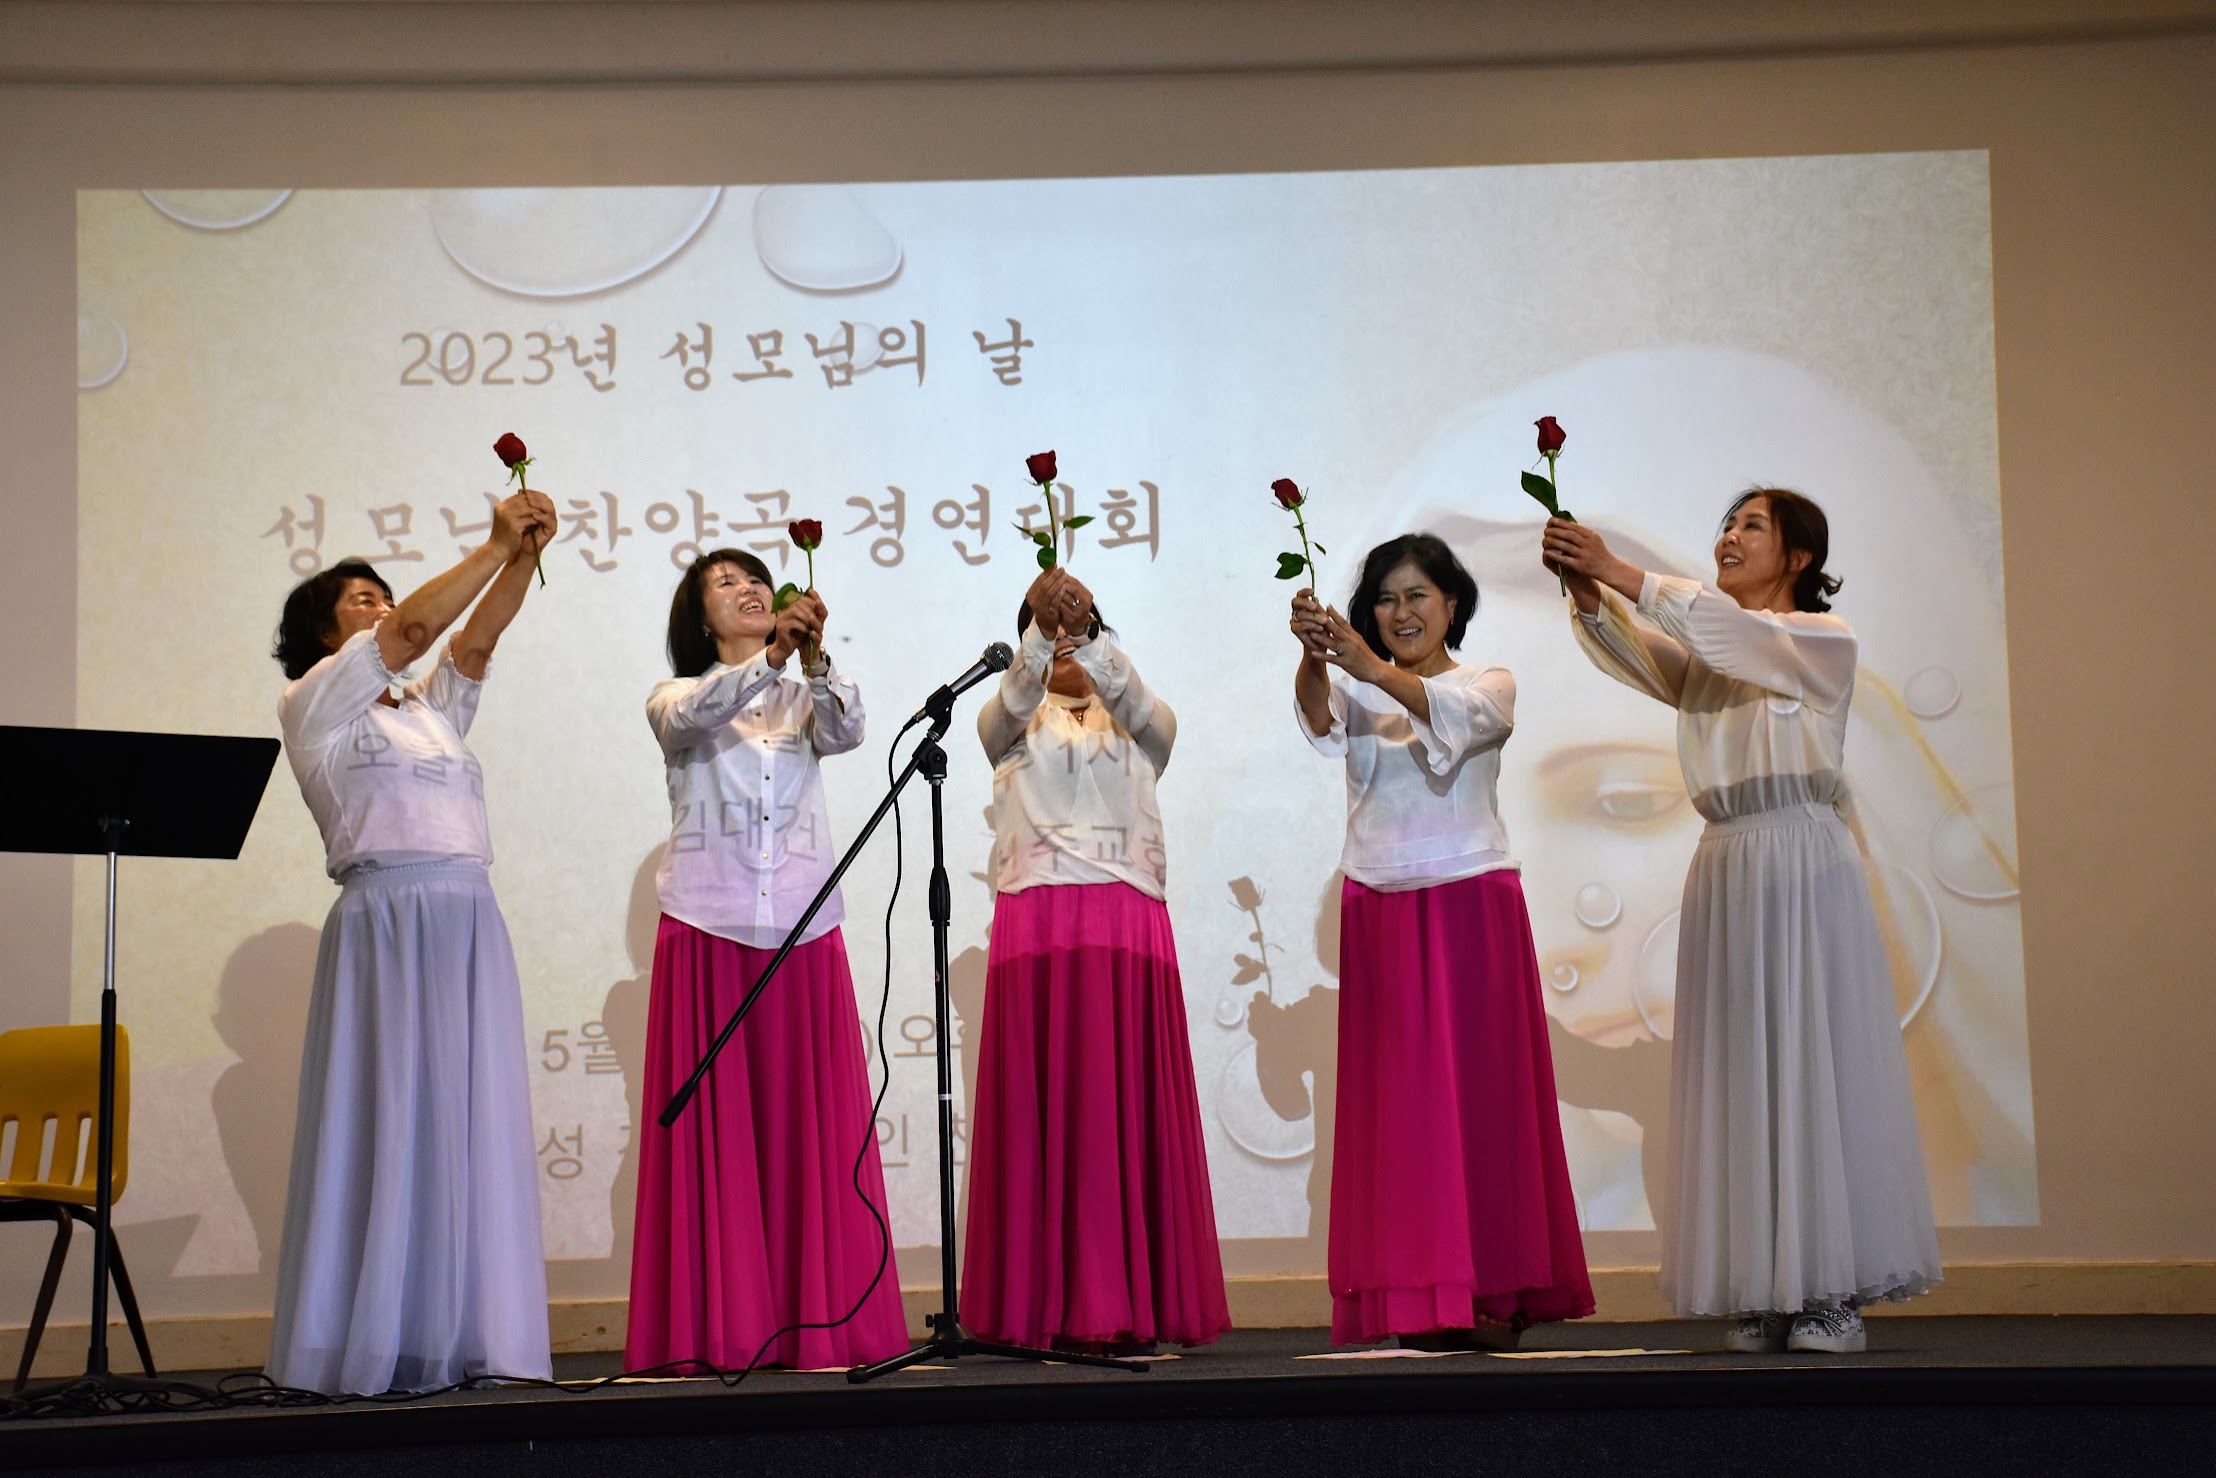 2023 성모의 날 행사 - 노래 경연 대회 (5.27)